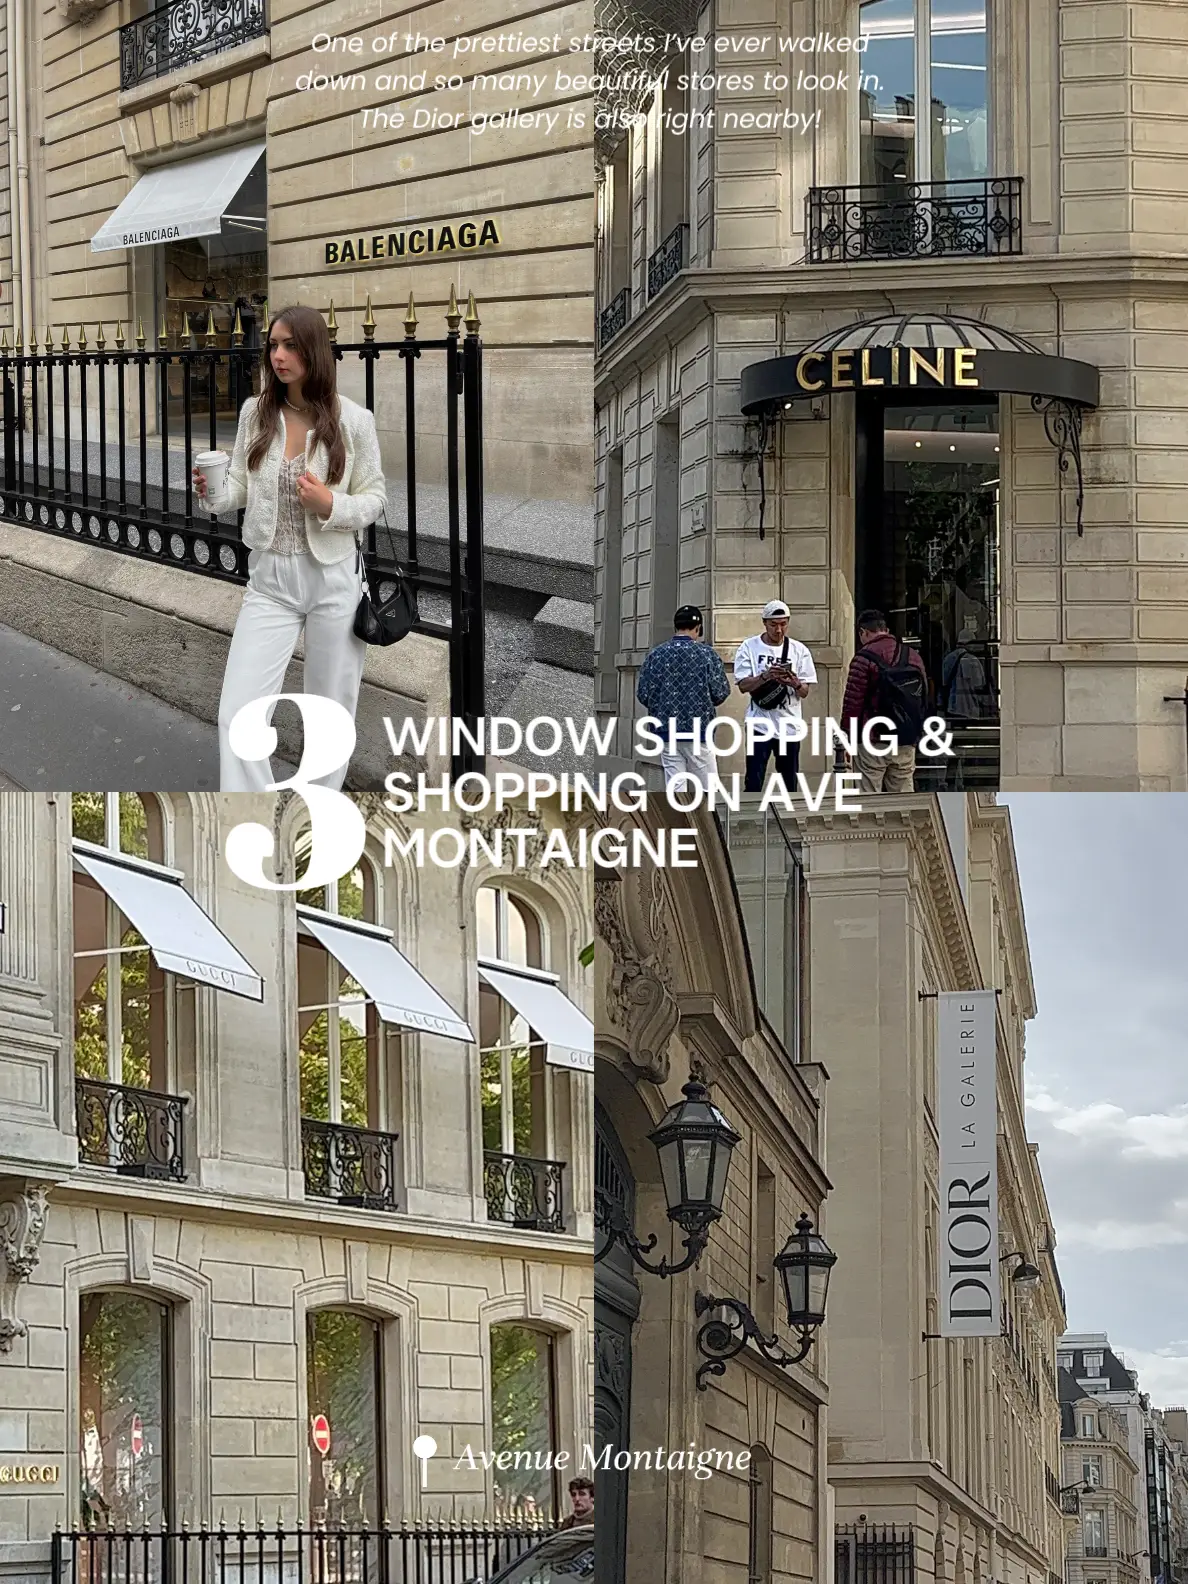 Chanel Store 31 Rue Cambon Paris France Photography Paris 